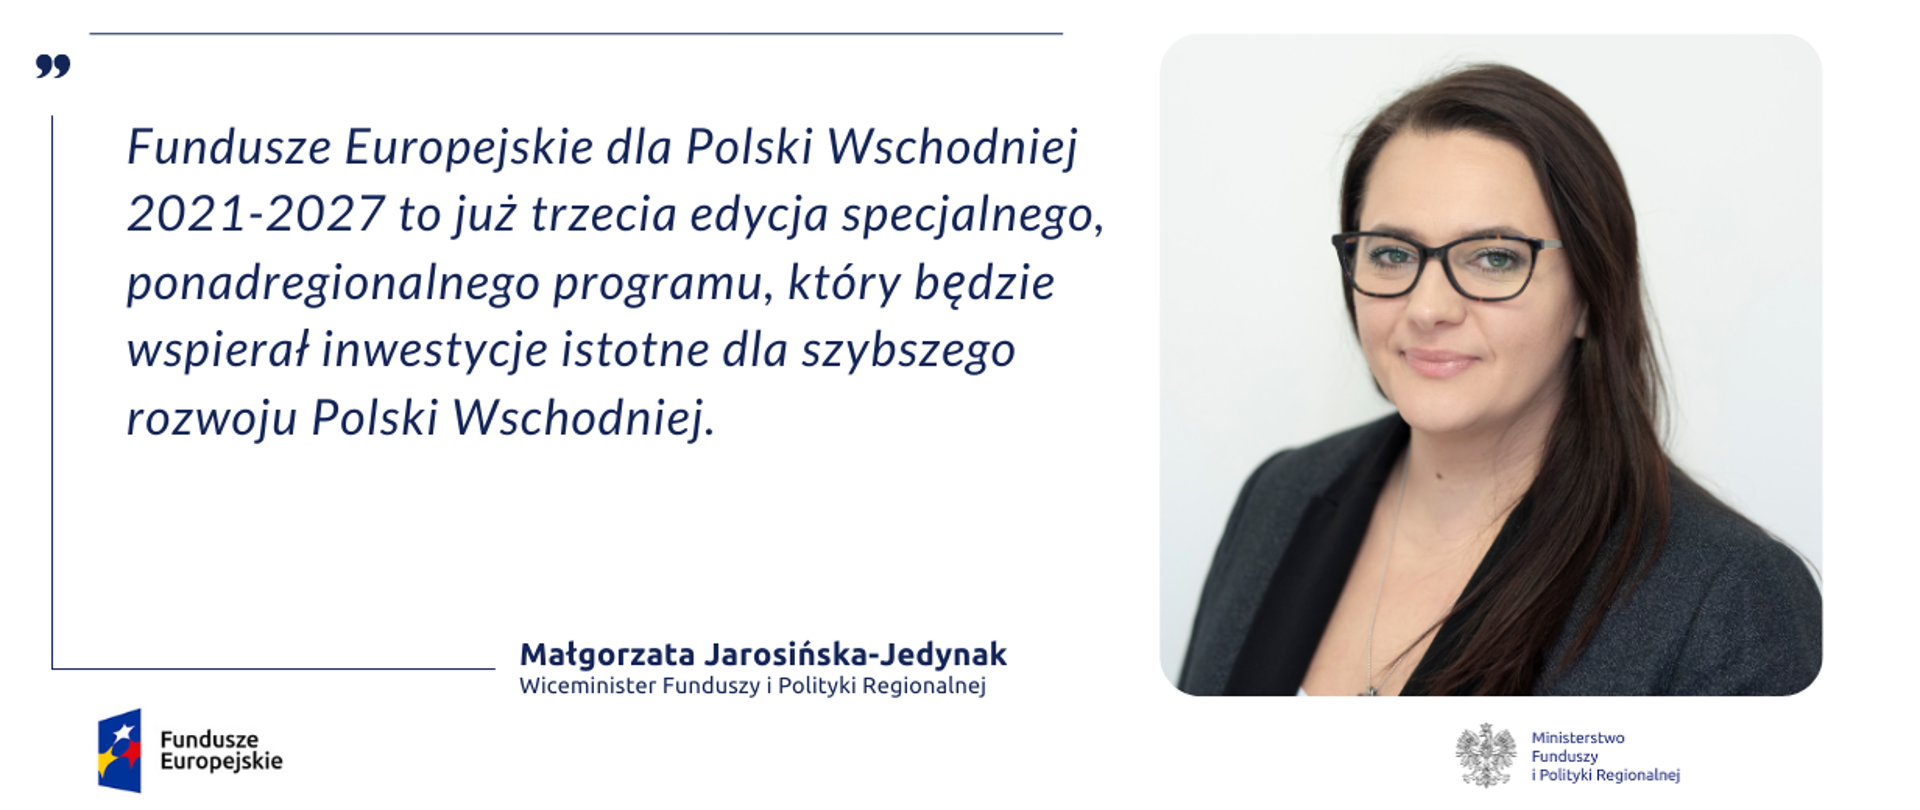 Na grafice po prawej zdjęcie portretowe wiceminister Małgorzaty Jarosińskiej-Jedynak. Po lewej jej cytat: "Fundusze Europejskie dla Polski Wschodniej 2021-2027 to już trzecia edycja specjalnego, ponadregionalnego programu, który będzie wspierał inwestycje istotne dla szybszego rozwoju Polski Wschodniej".